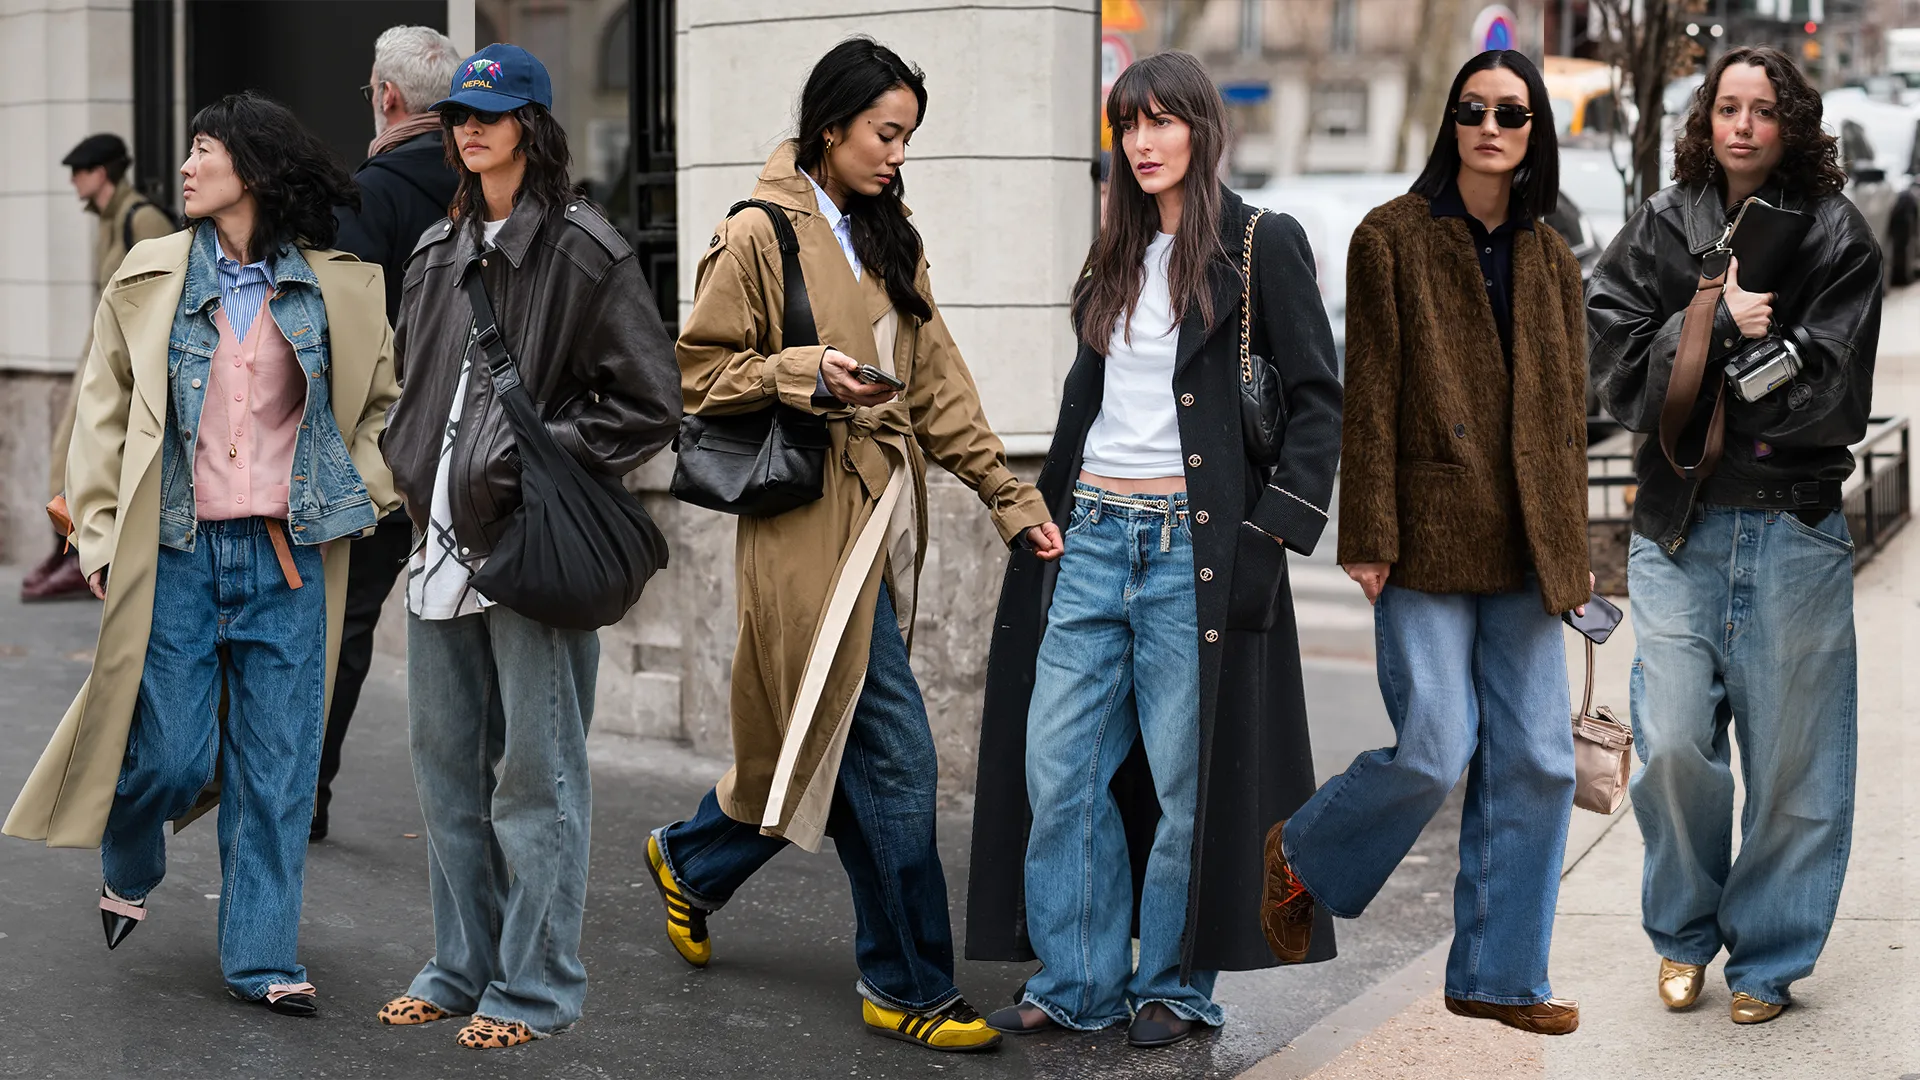 Ways to Style Baggy Jeans for a Trendy Look : बगी जींस के लिए स्टाइलिंग गाइड: ट्रेंडी लुक पाने के लिए 10 शानदार तरीके